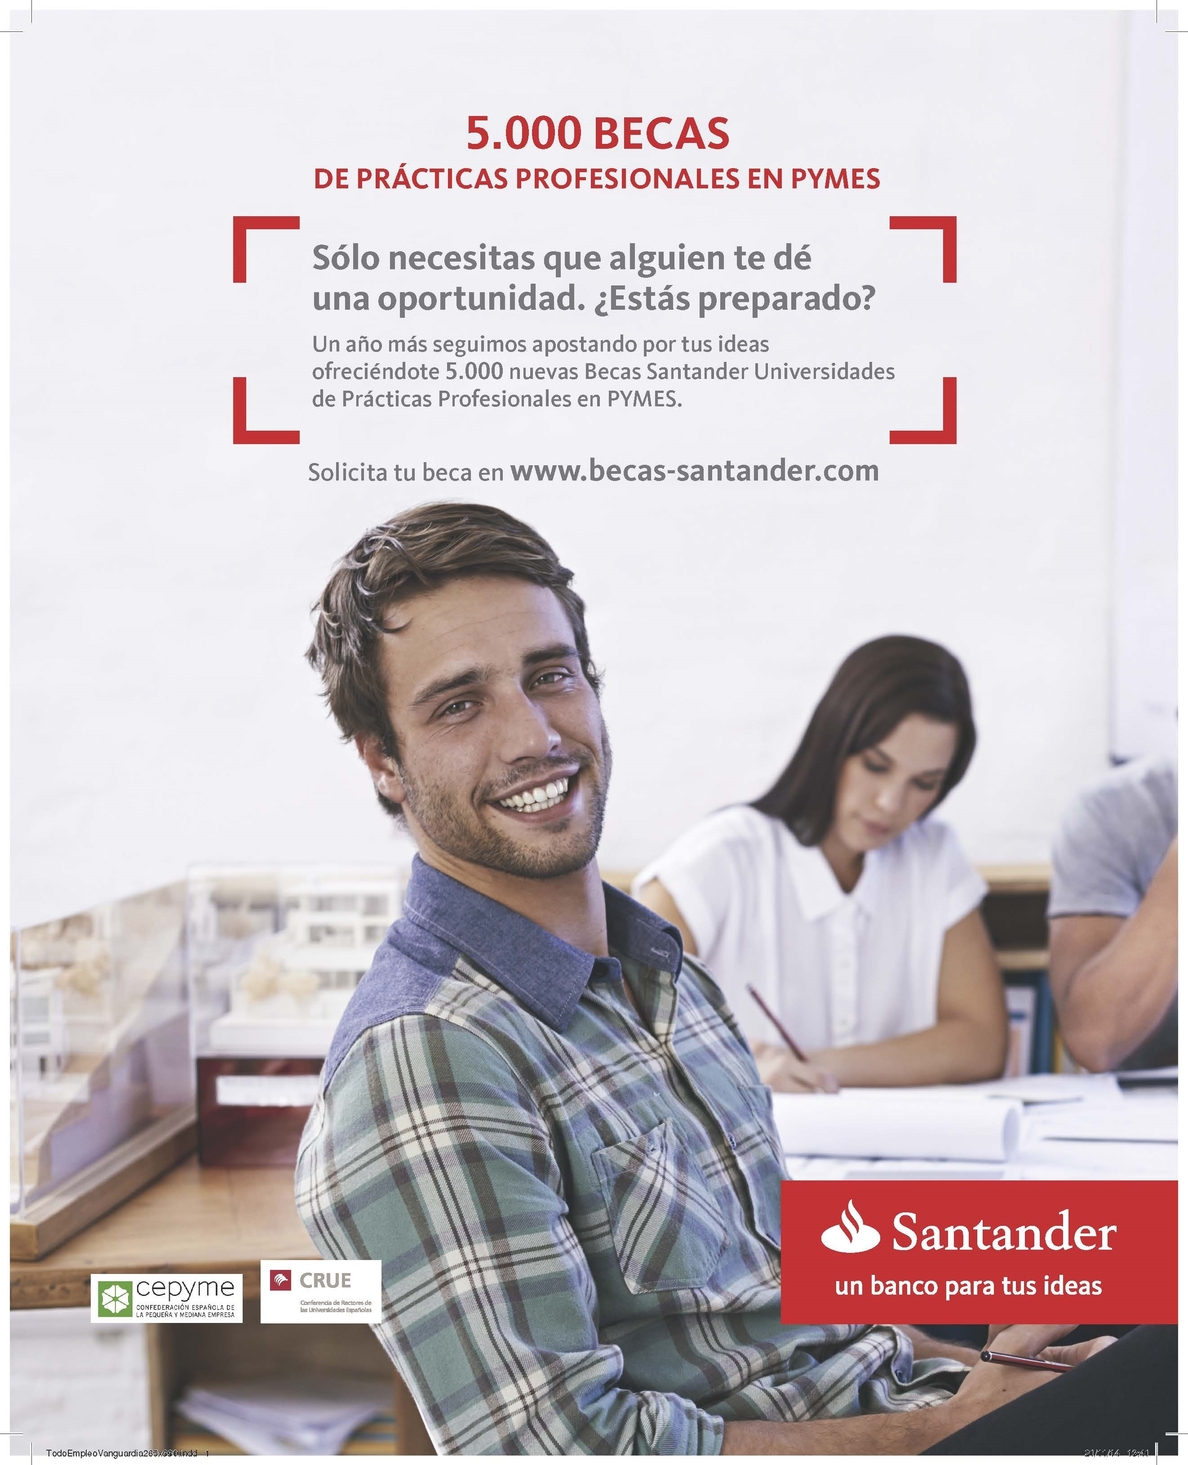 Más de 1.200 universitarios extremeños solicita una beca Santander para prácticas remuneradas en pymes